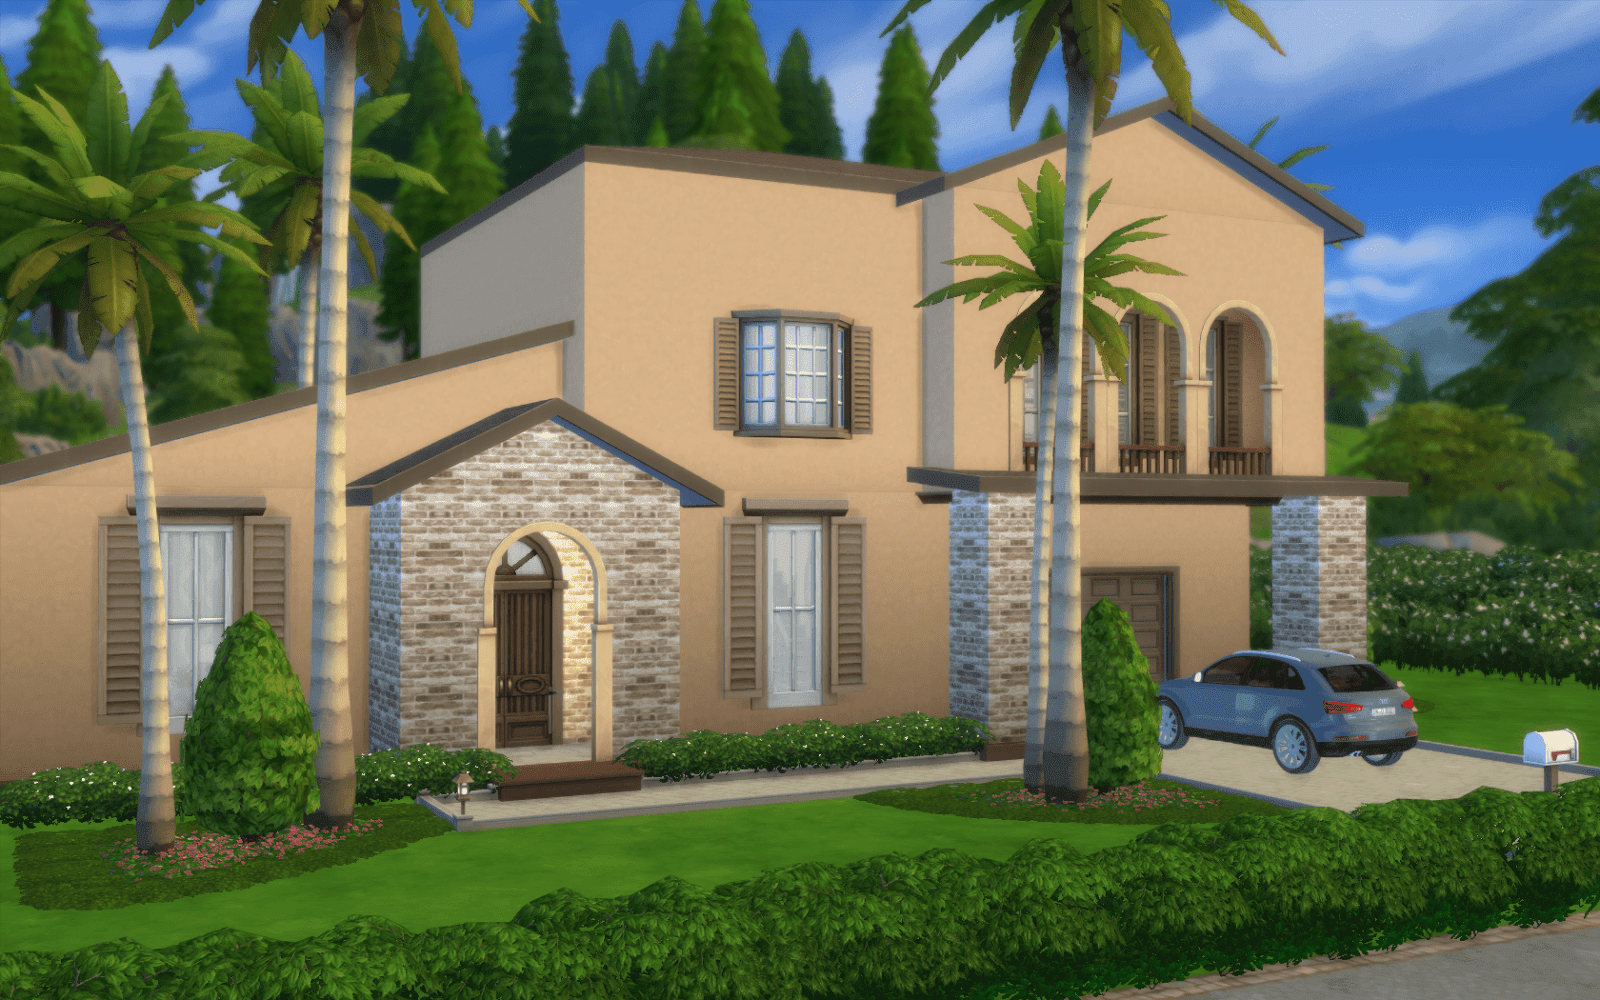 Sims 4 Maison De Luxe A Telecharger | Ventana Blog